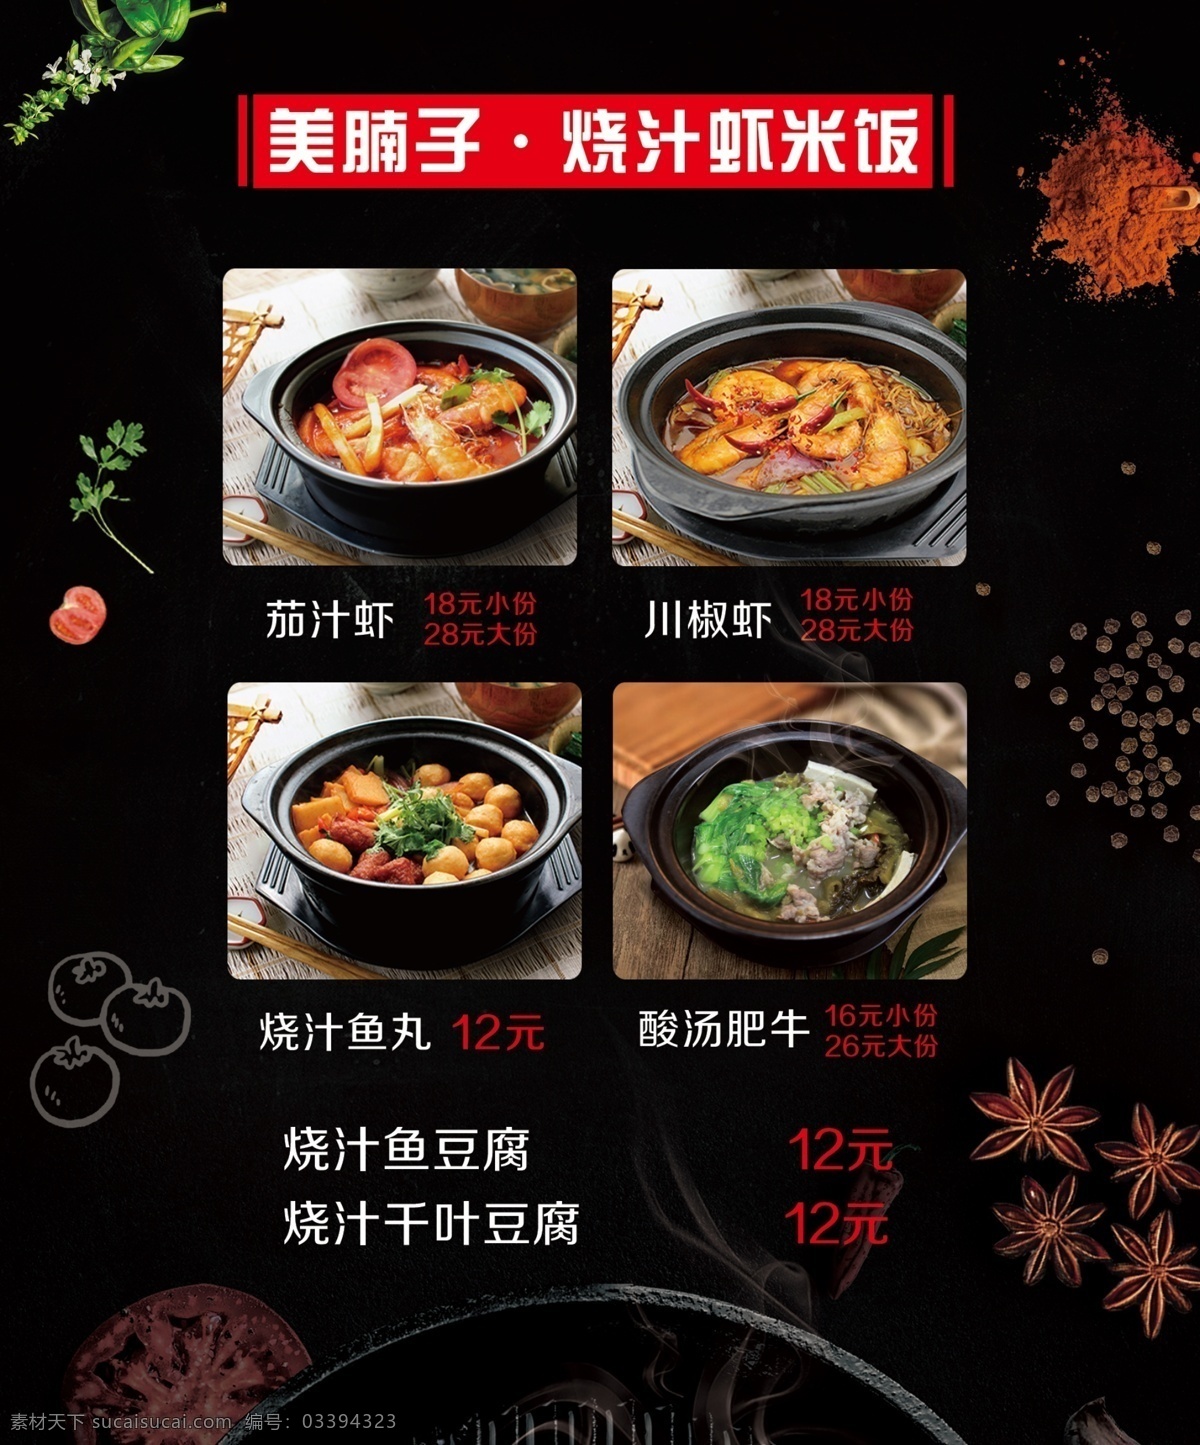 菜单 价格表 茄汁虾 时尚高档 黑色背景 菜单菜谱